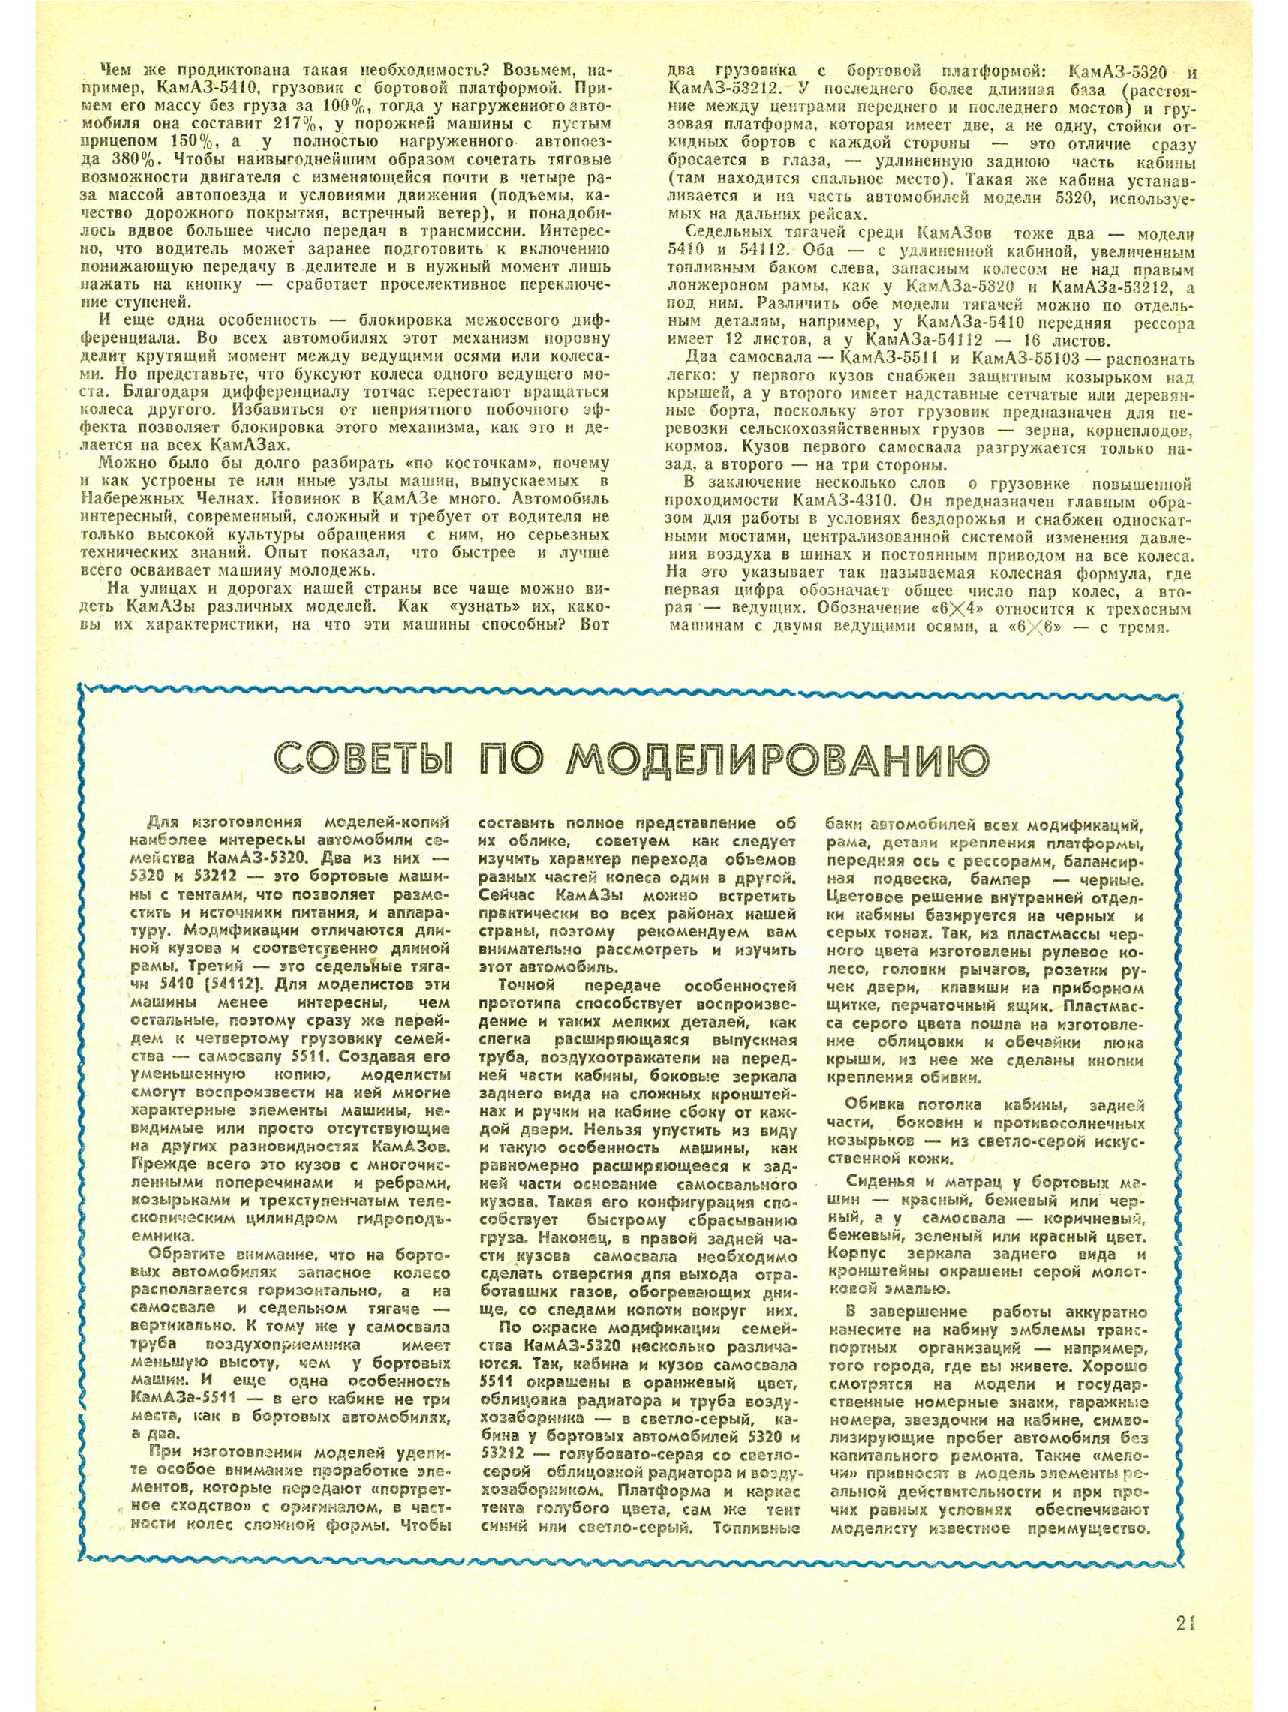 МК 10, 1982, 21 c.